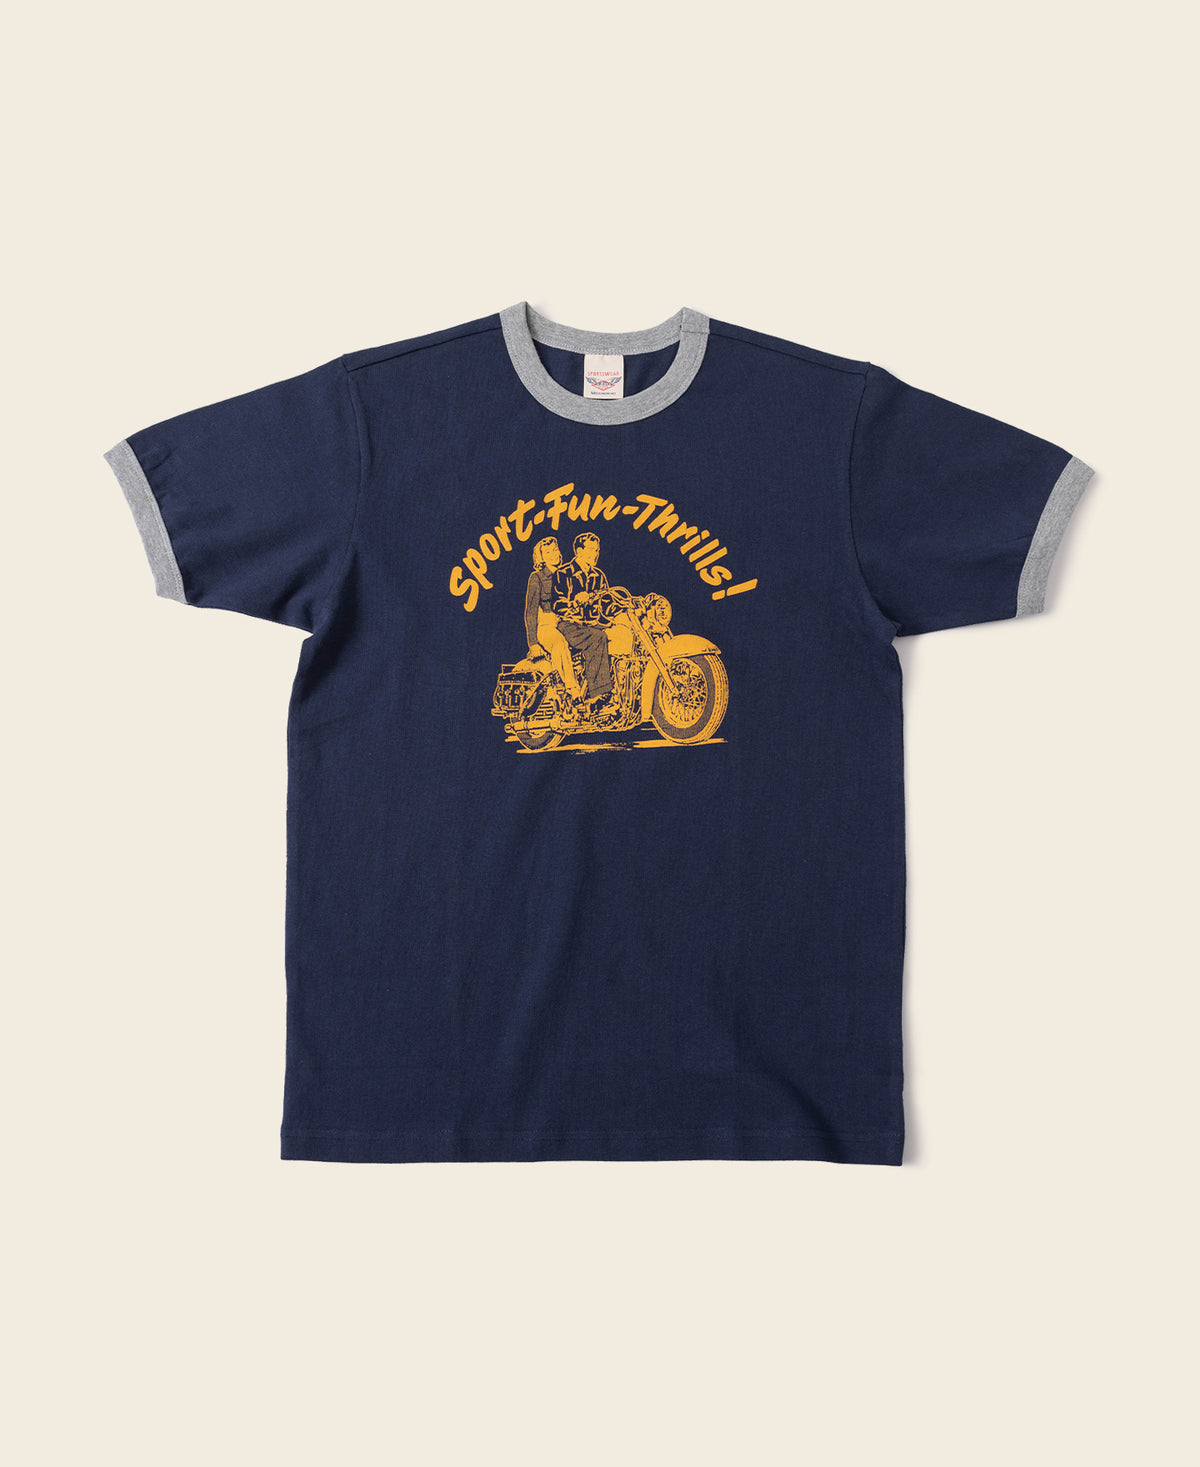 Retro Motorcycle Rider Printed T-Shirt - Navy